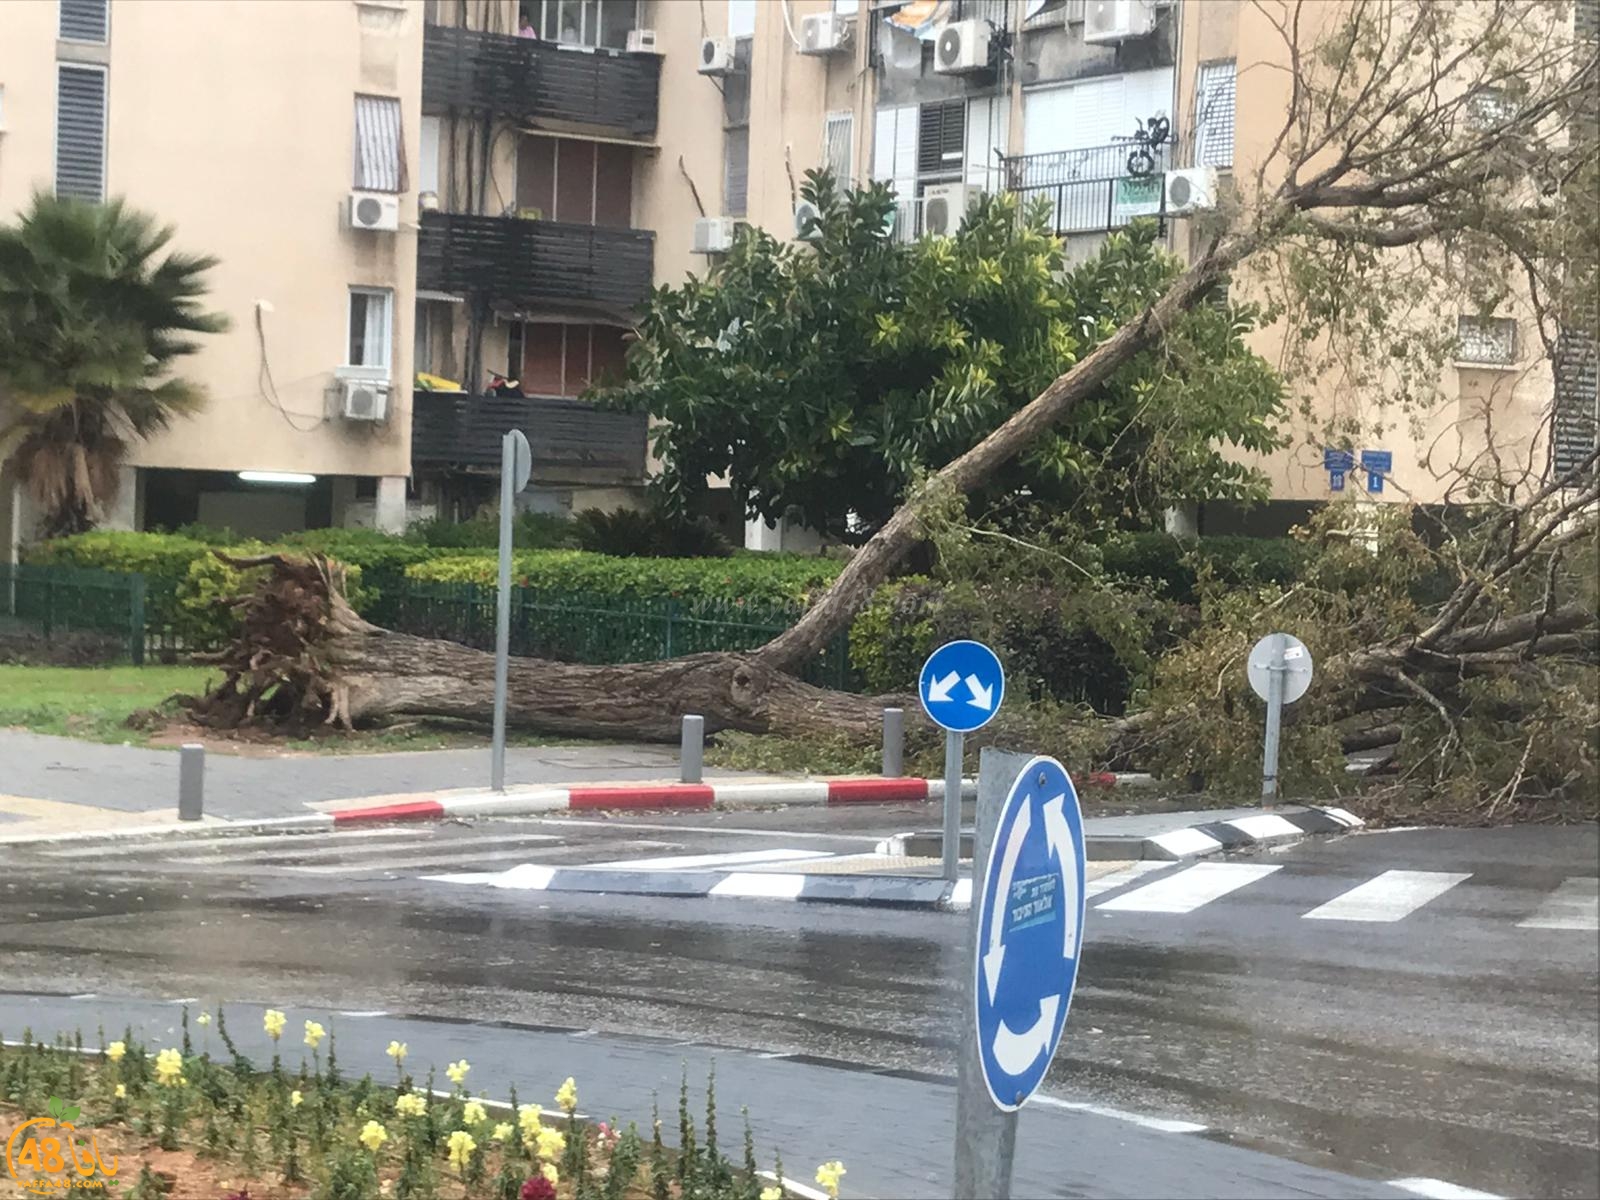 بالصور: سقوط شجرة ضخمة في شارع روبنشتاين بيافا اثر الرياح العاصفة